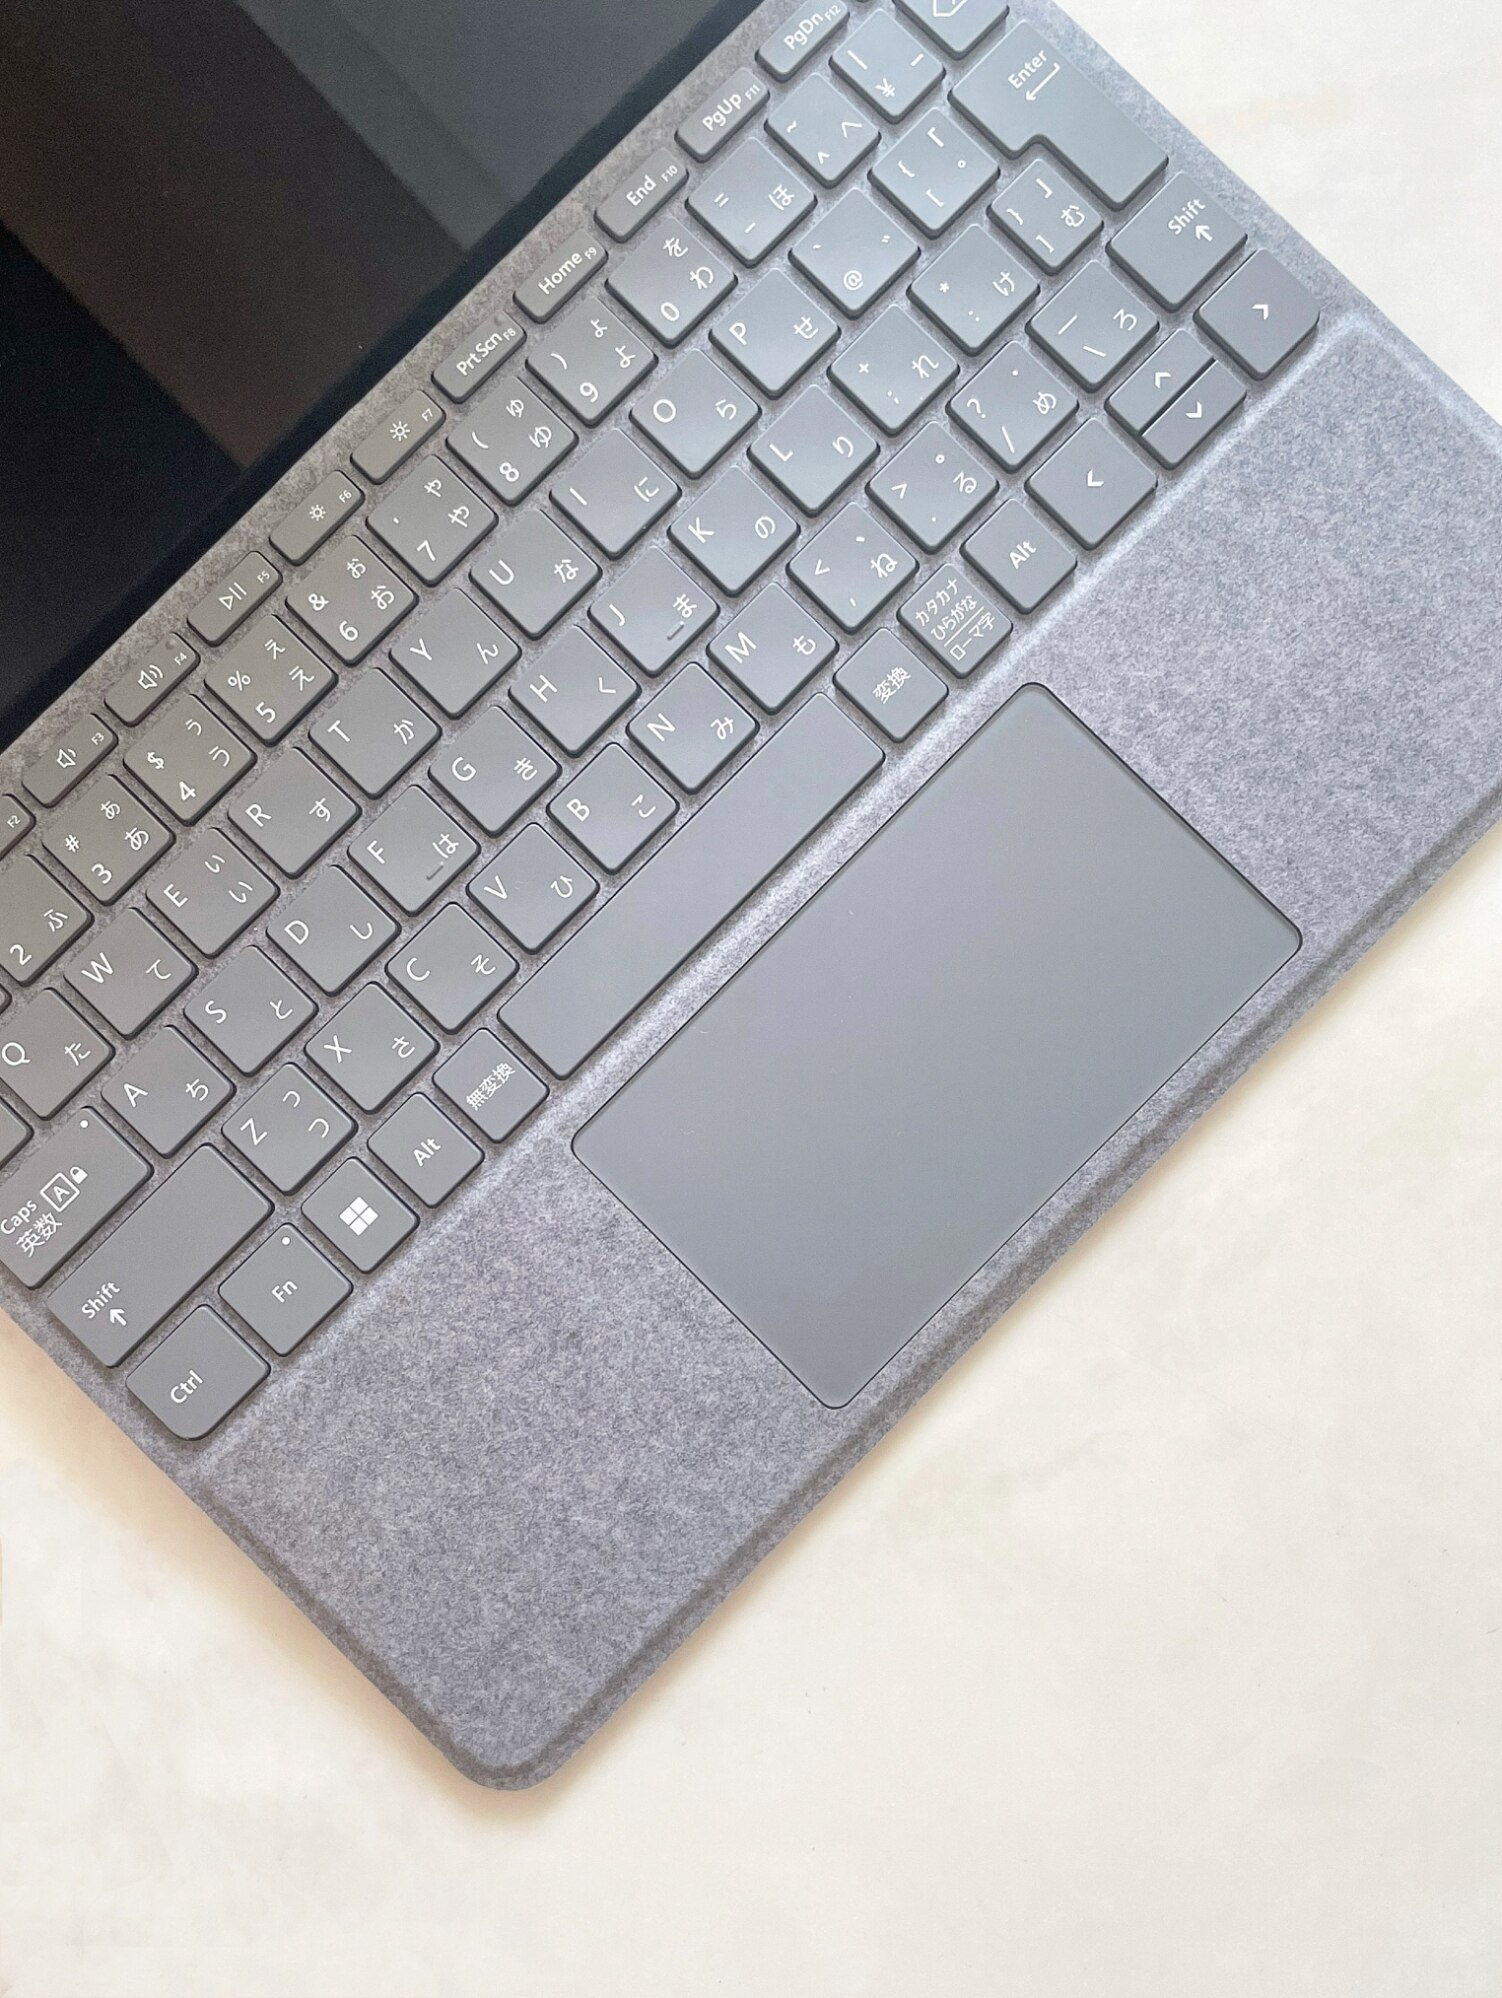 マイクロソフト Microsoft Surface Go タイプカバー プラチナ-